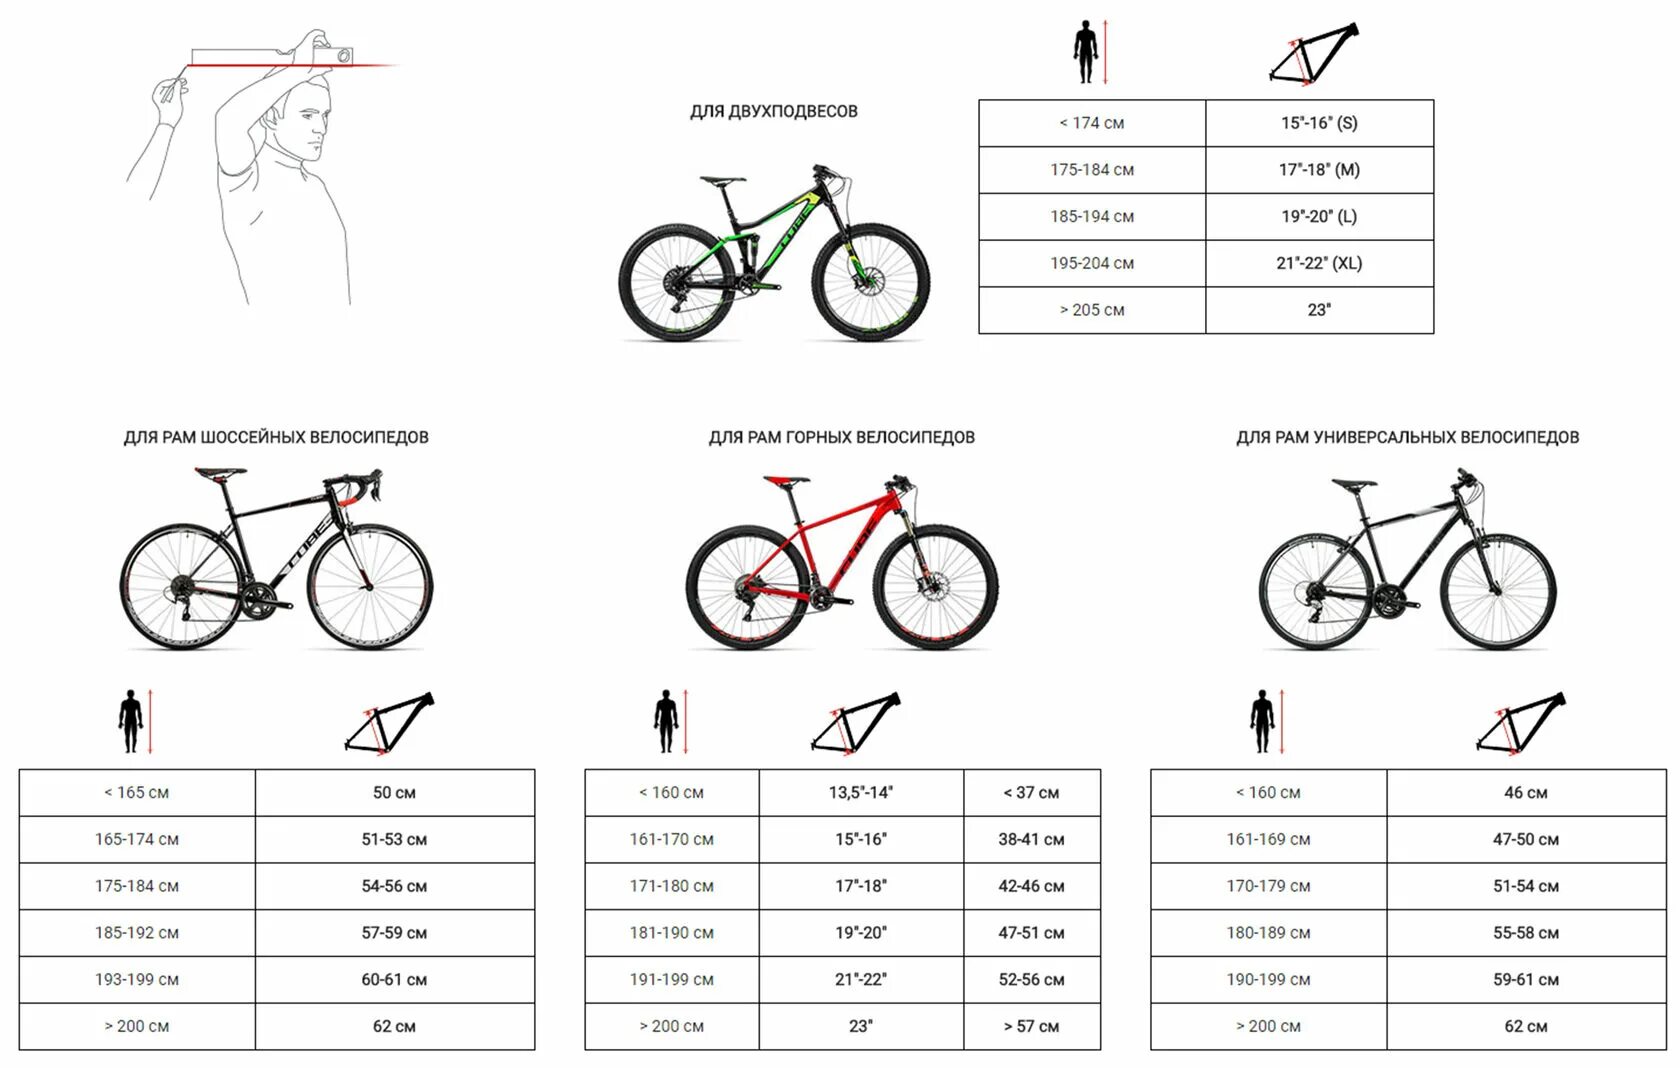 20 дюймов колес на какой рост. Велосипед stels размер рамы и рост. Как выбрать размер горного велосипеда по росту таблица. Как выбрать параметры велосипеда по росту и весу таблица. Рост и рама велосипеда таблица.